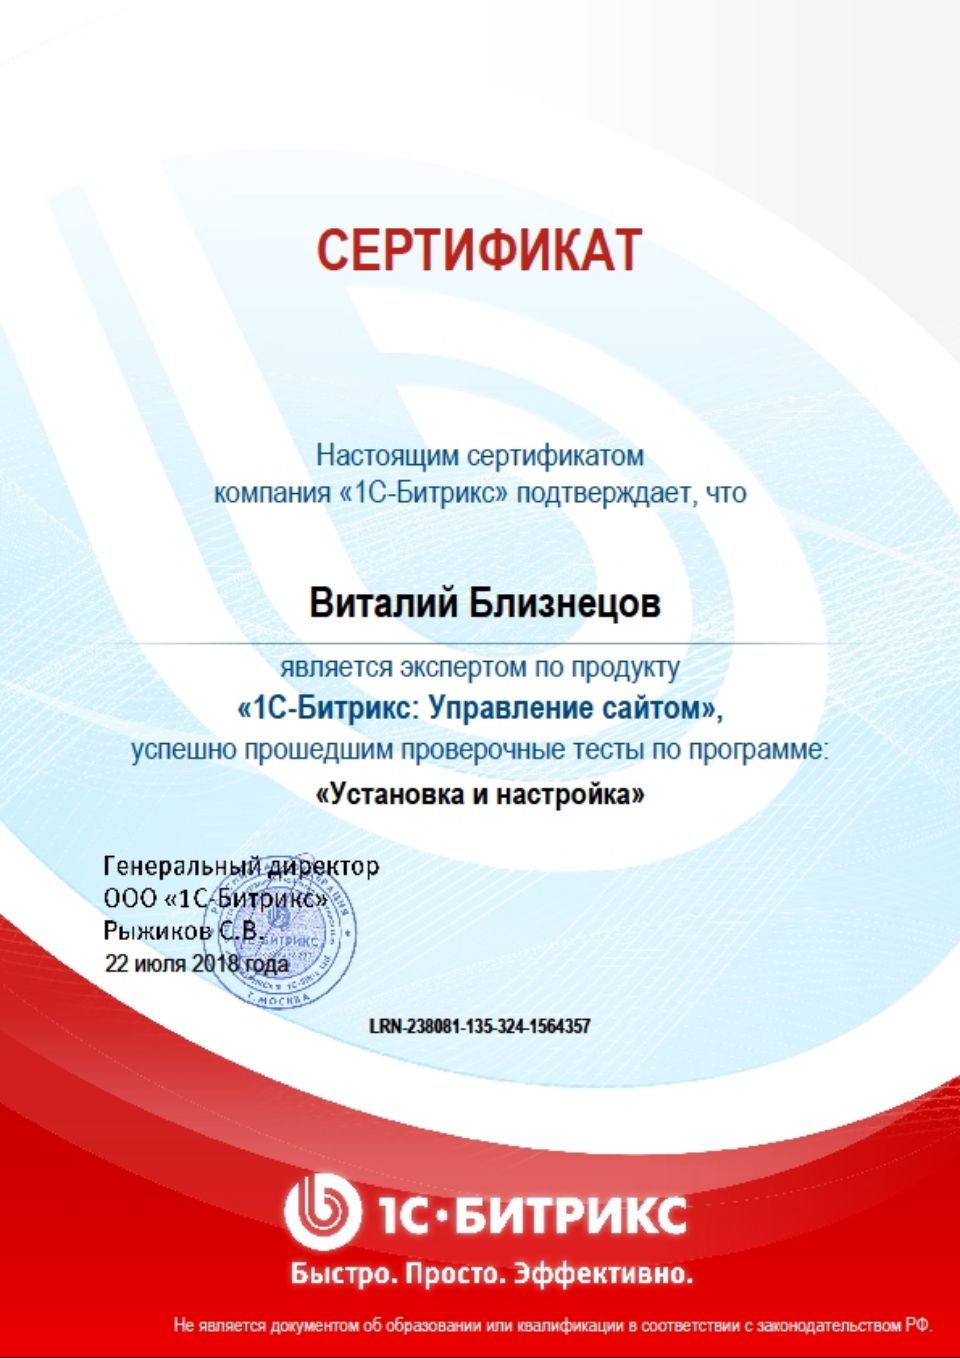 Сертификат Битрикс-Установка и настройка